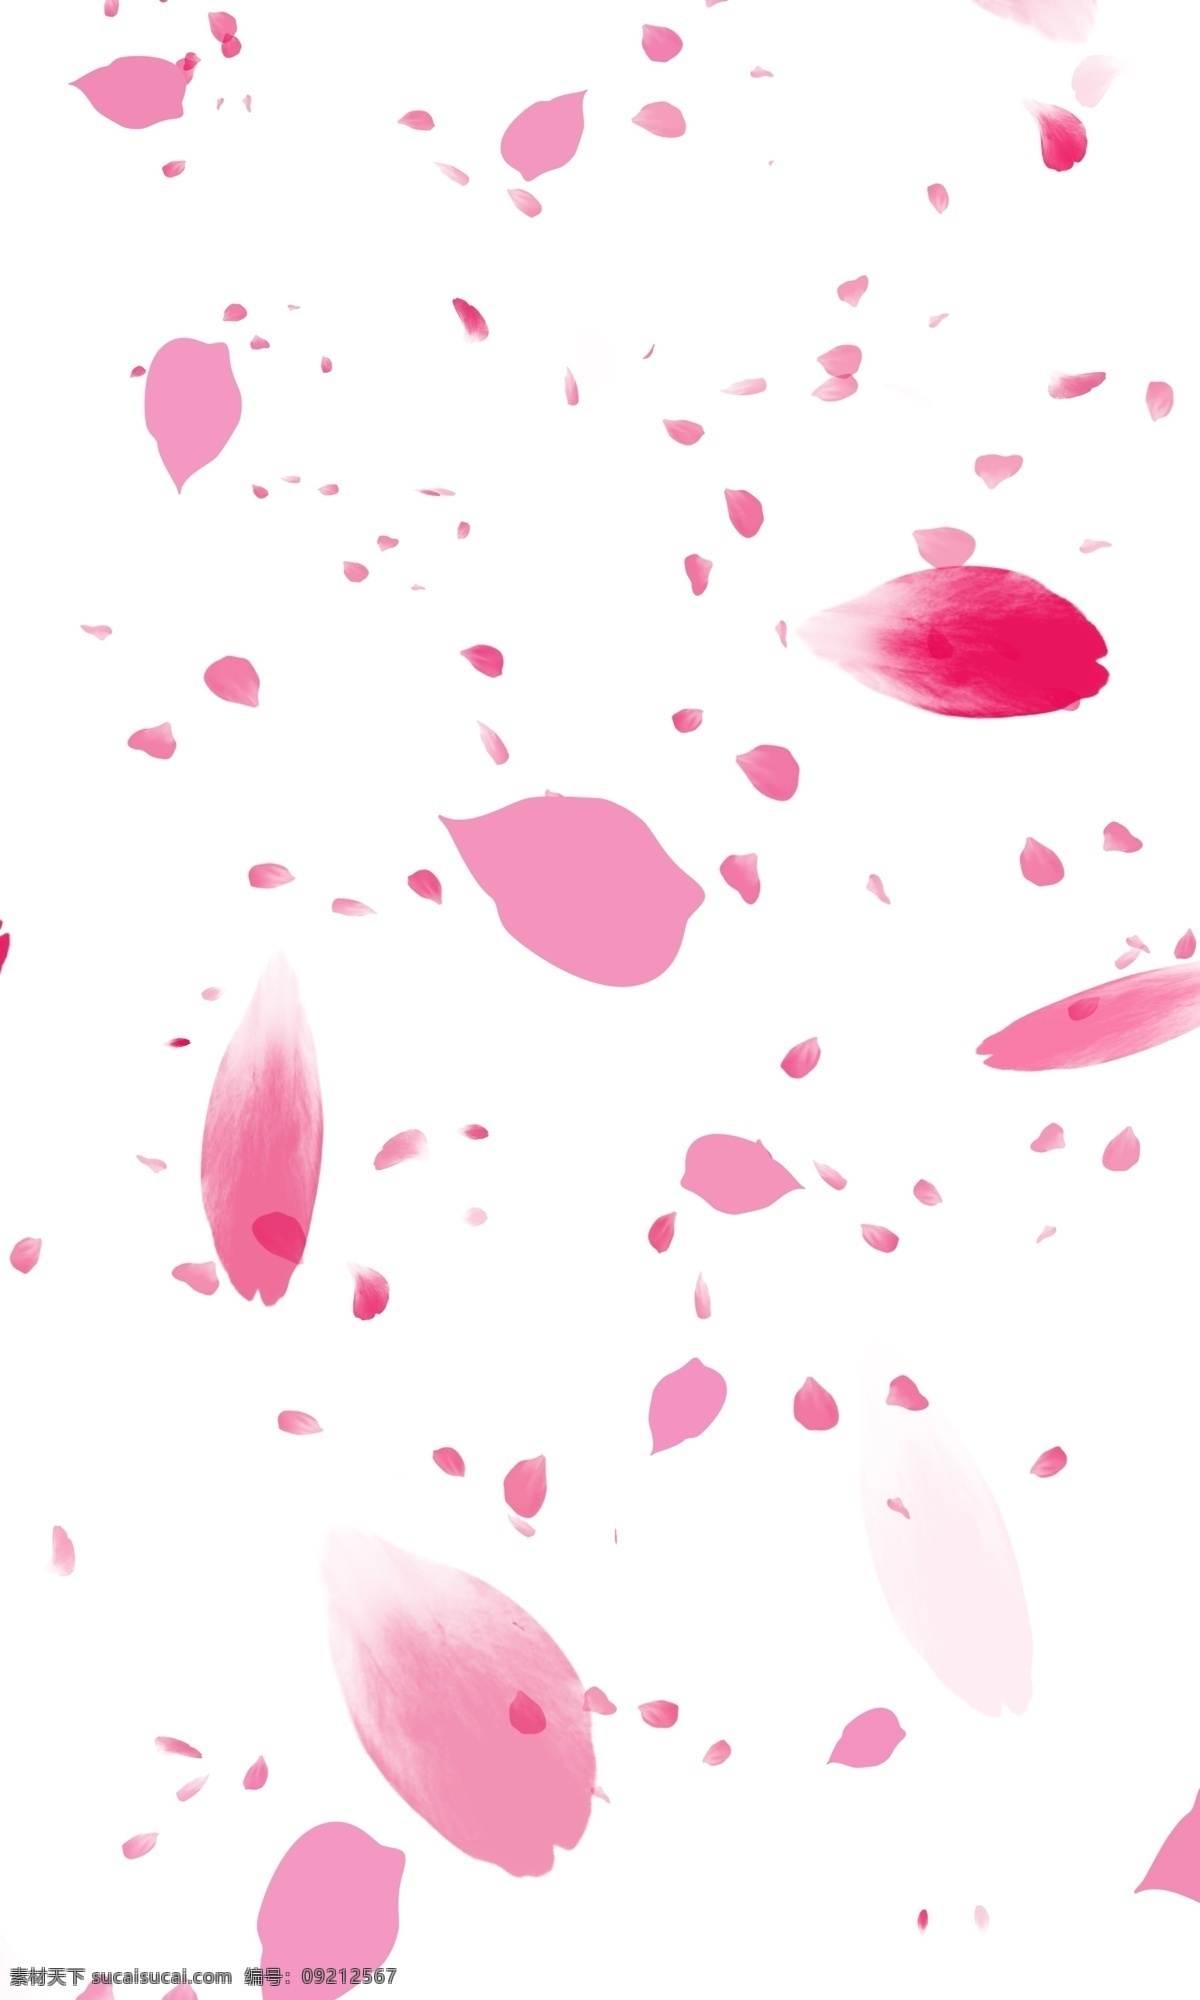 粉红色 花瓣 雨 背景 免 扣 粉红色花瓣 可自行组合 免扣 浪漫的花瓣雨 高清